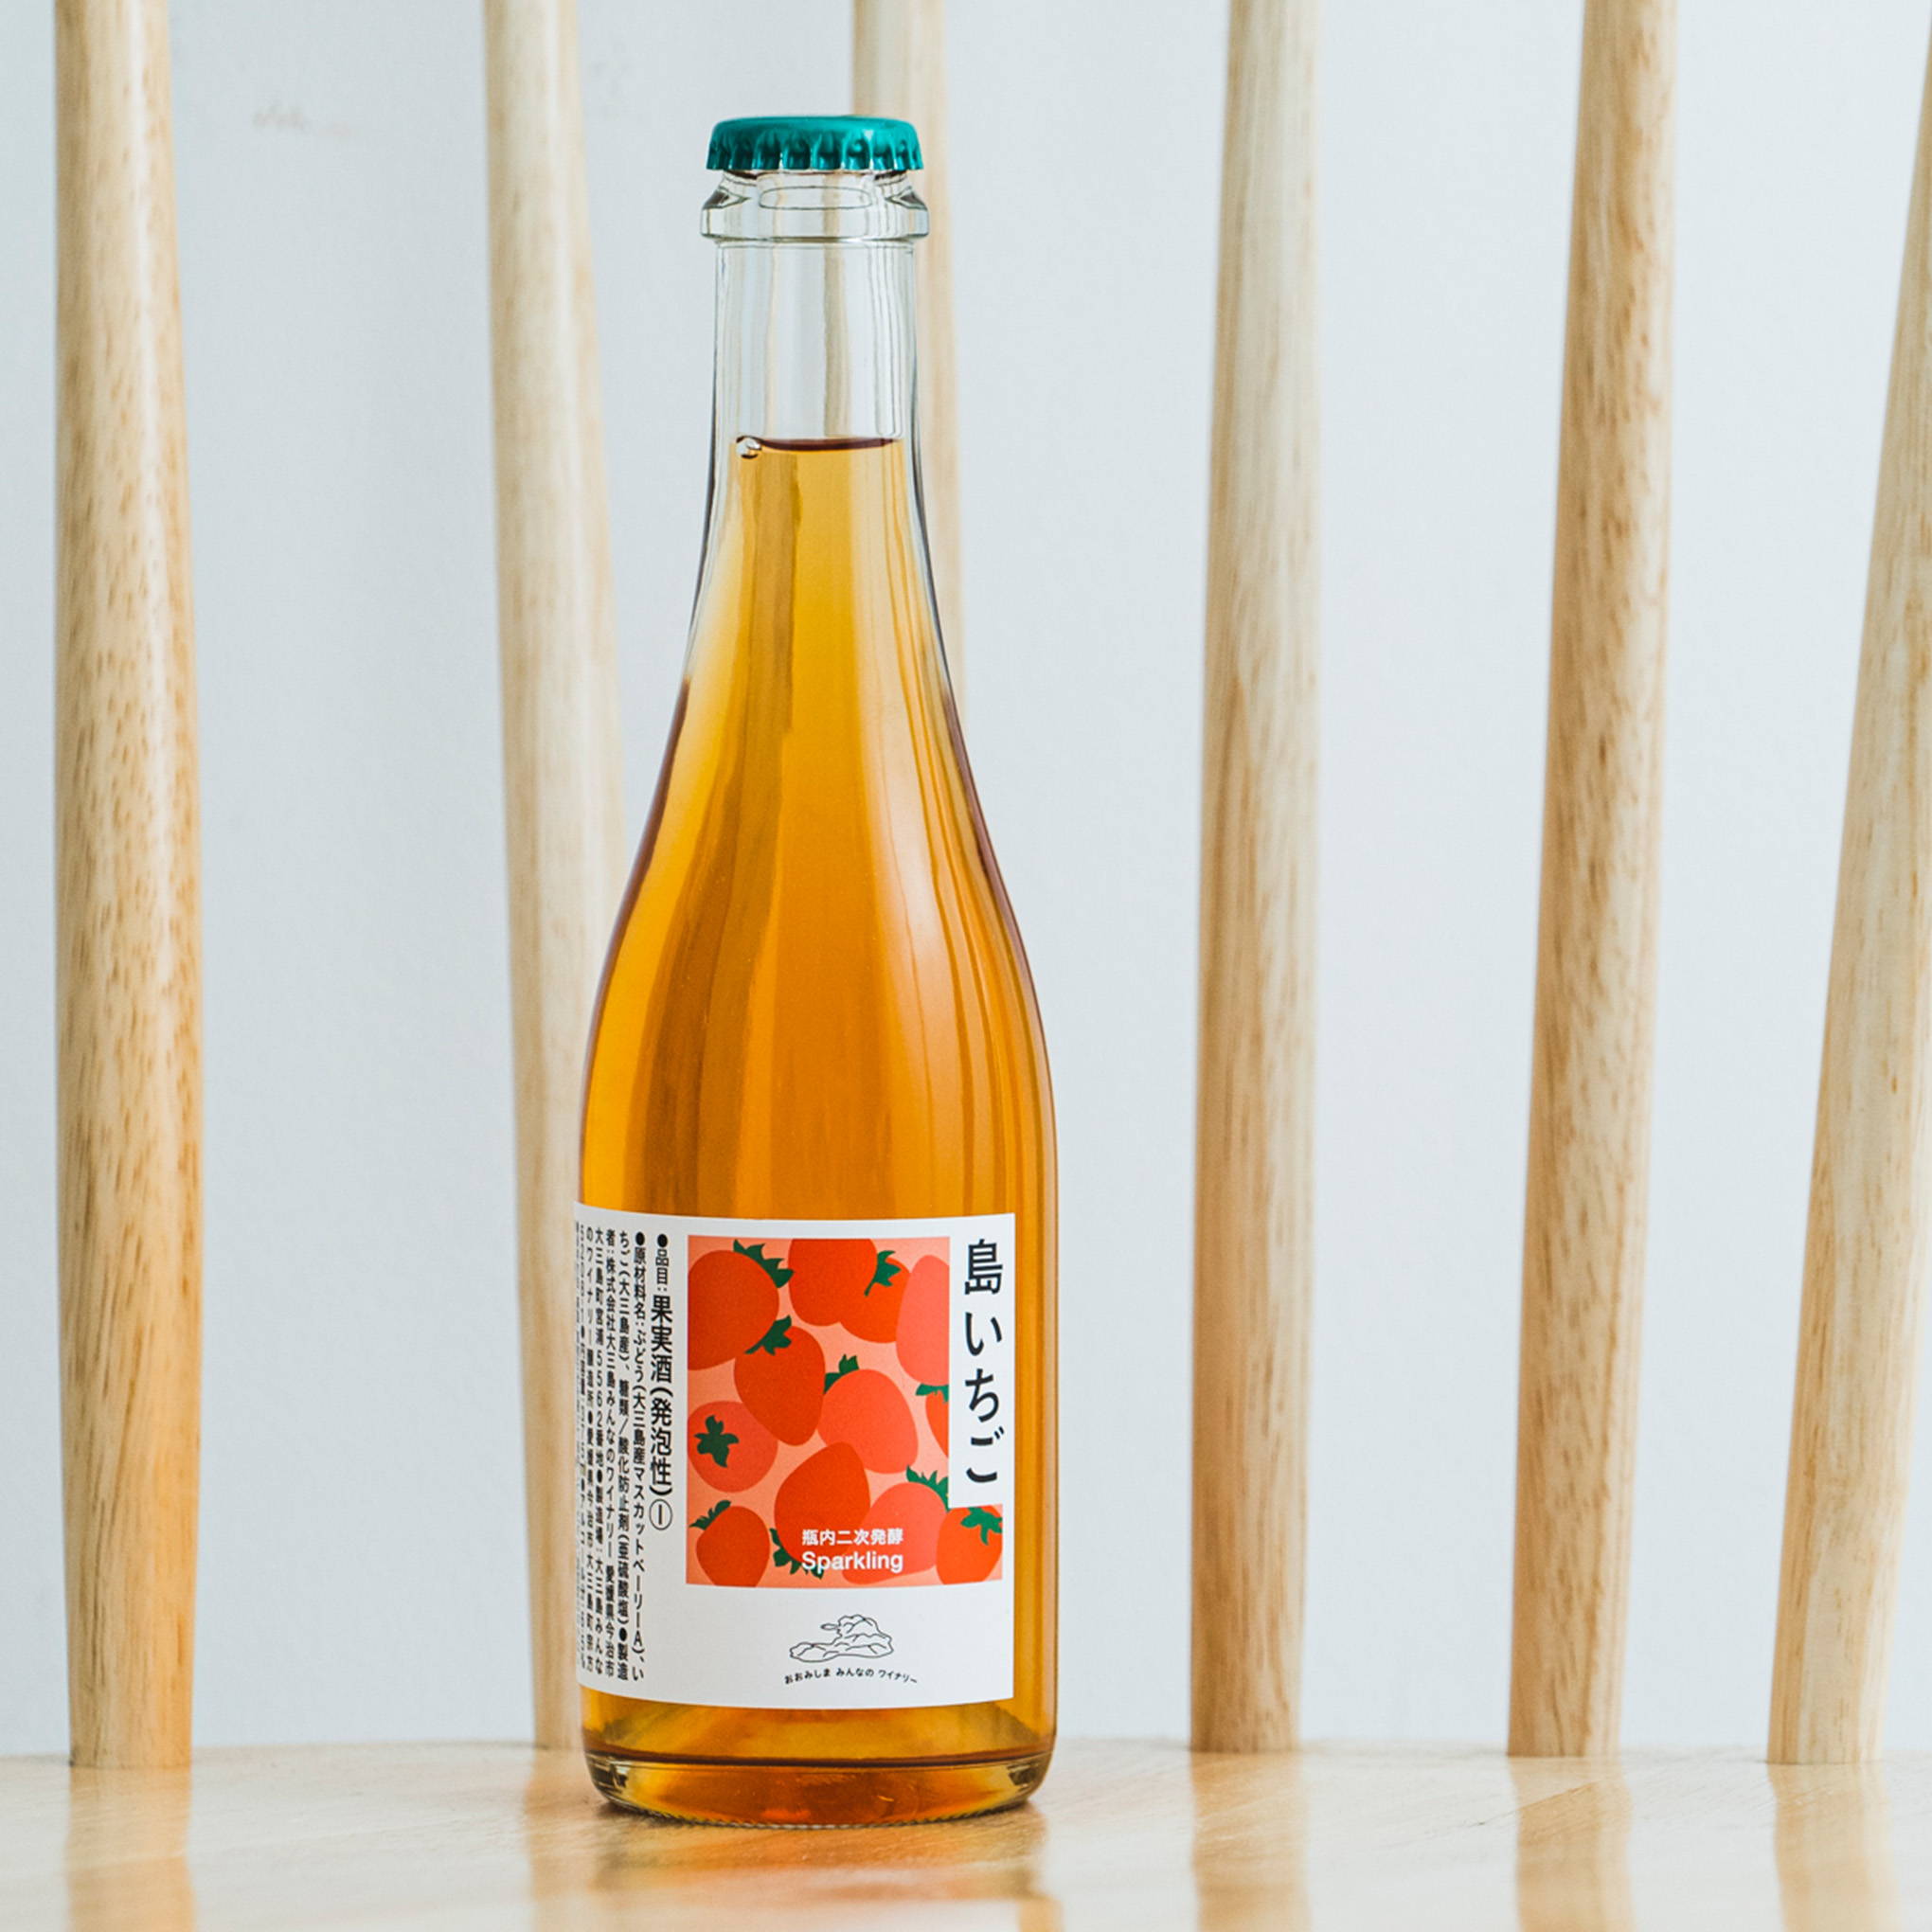 香り高いイチゴの香りがそのままお酒に！ボトルの可愛さも特長の「島いちご」が瀬戸内海の島から到着。